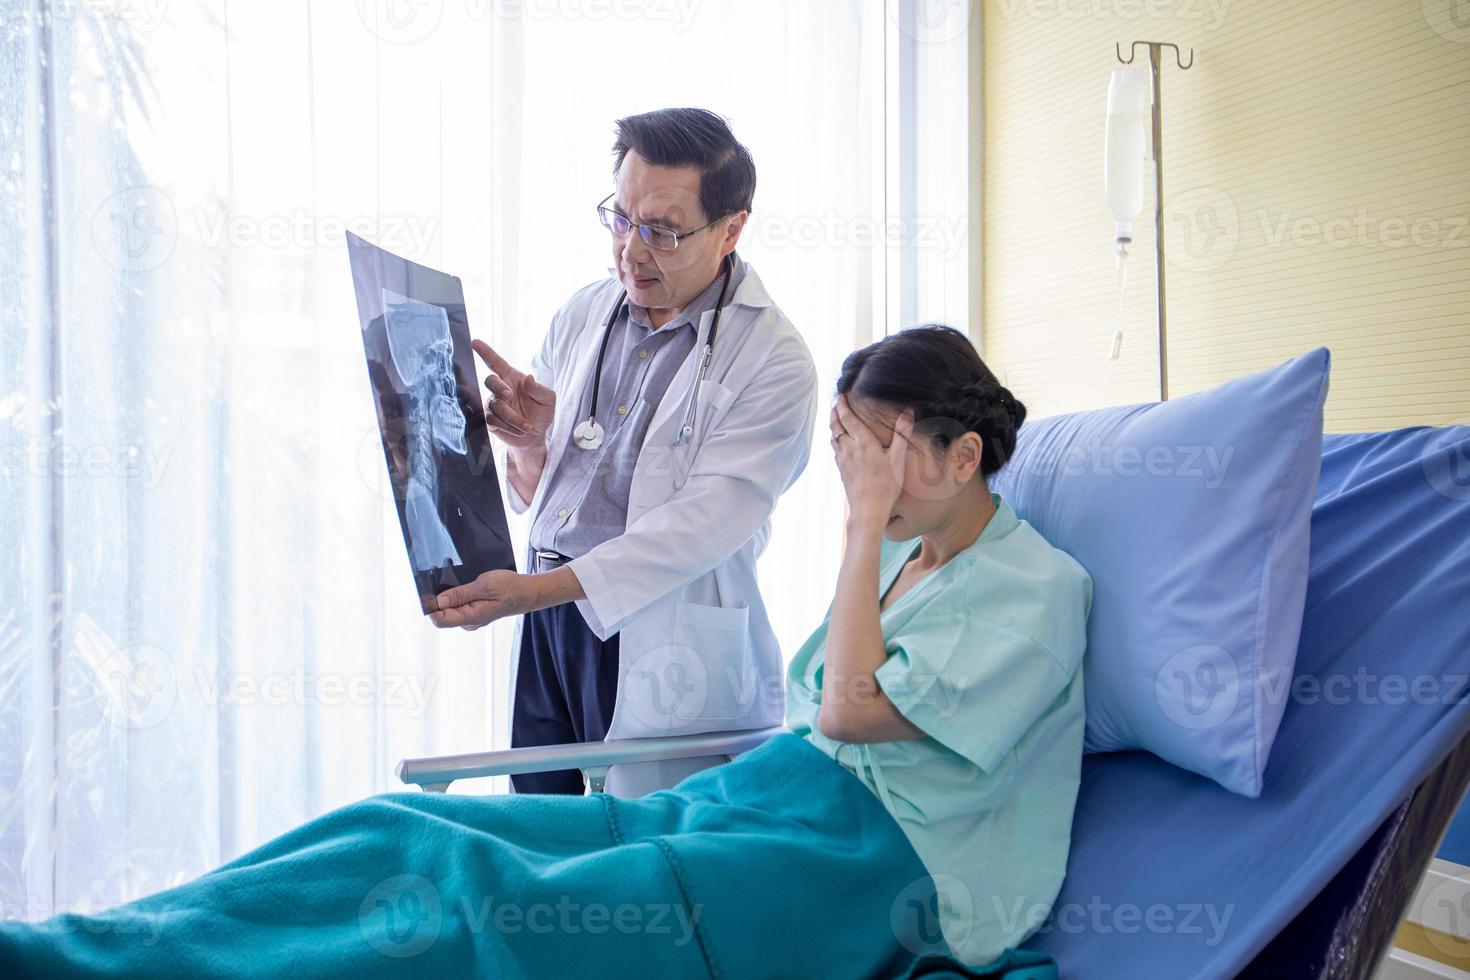 de dokter legt uit over de resultaten van de hersenröntgenfoto's aan een vrouwelijke patiënt die in bed in een ziekenhuis ligt foto